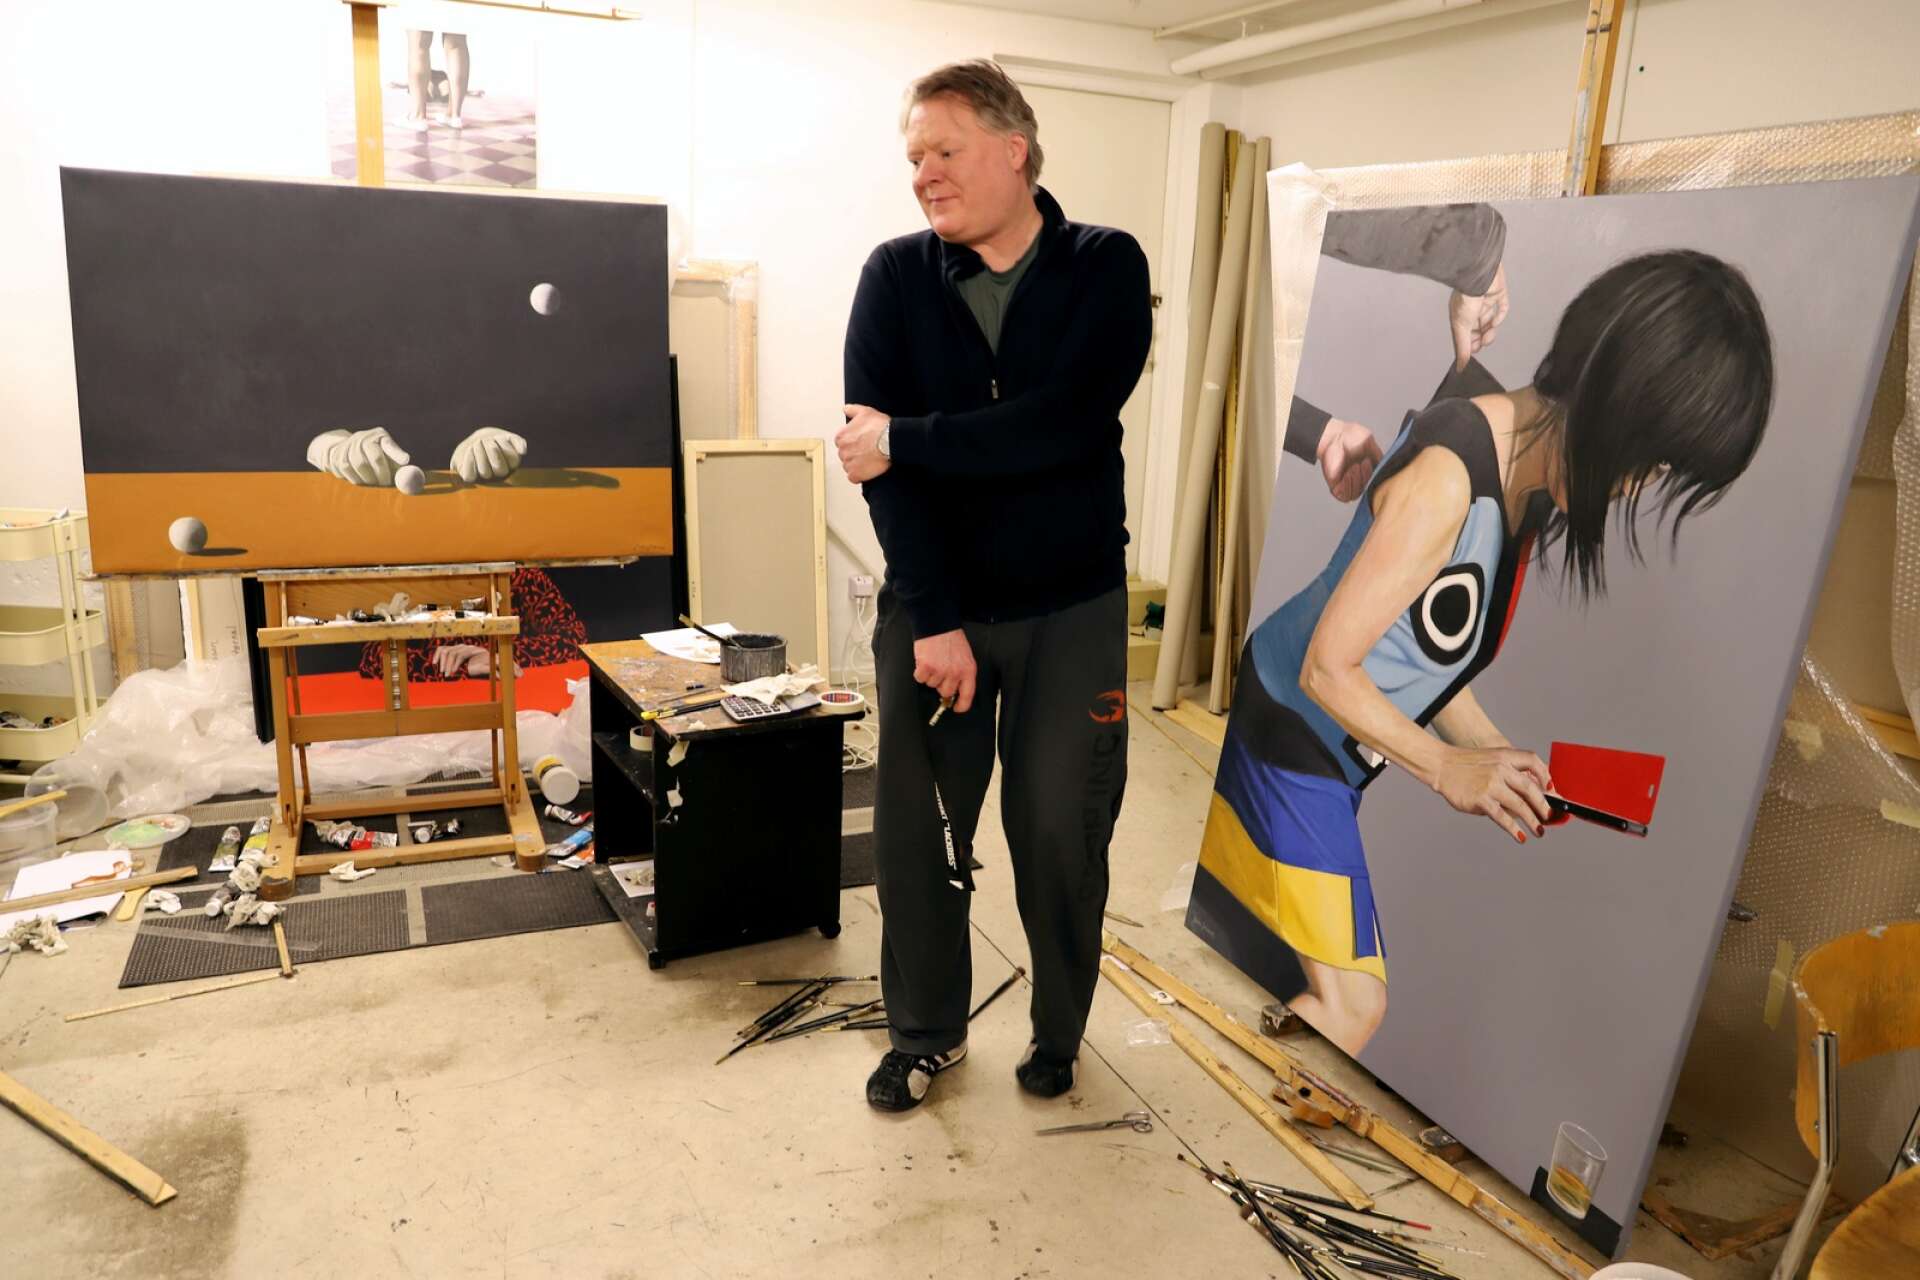 Joakim Johansson tycker om att måla stort och nu hoppas han snart orka igång igen på allvar med måleriet, efter att ha tappat geisten sedan bästa vännen Niki Merimaa dog, bara 44 år gammal.